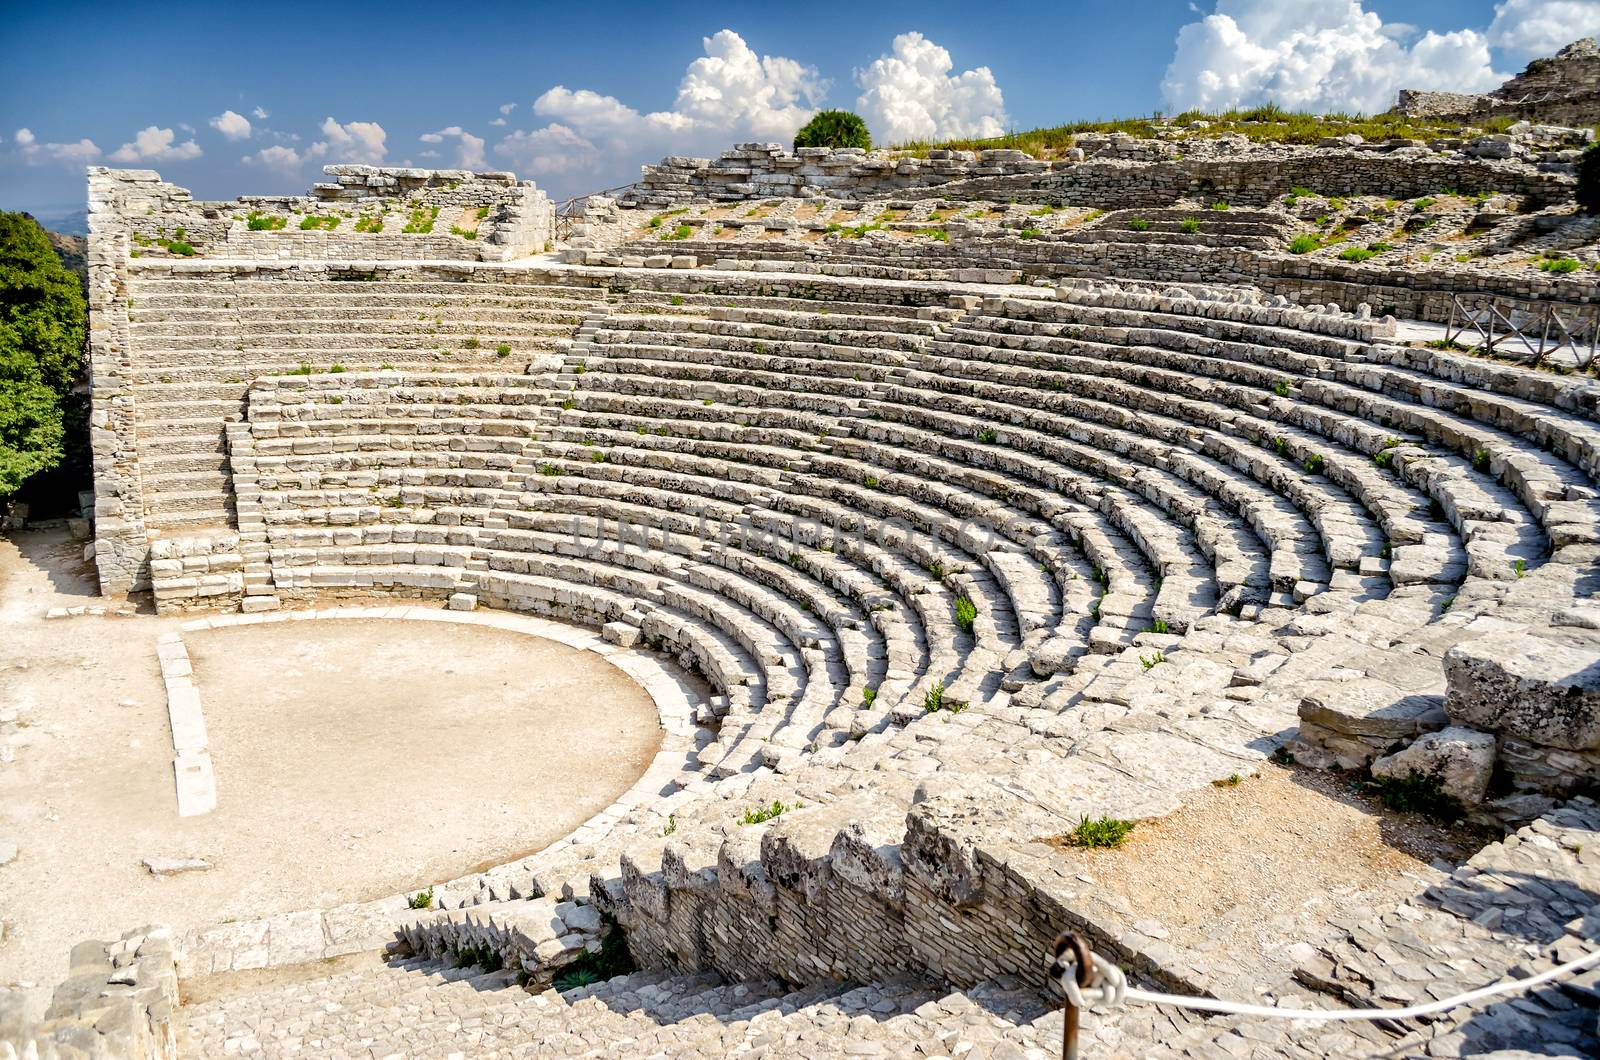 Greek Theatre of Segesta, Sicily, Italy, Summer 2014